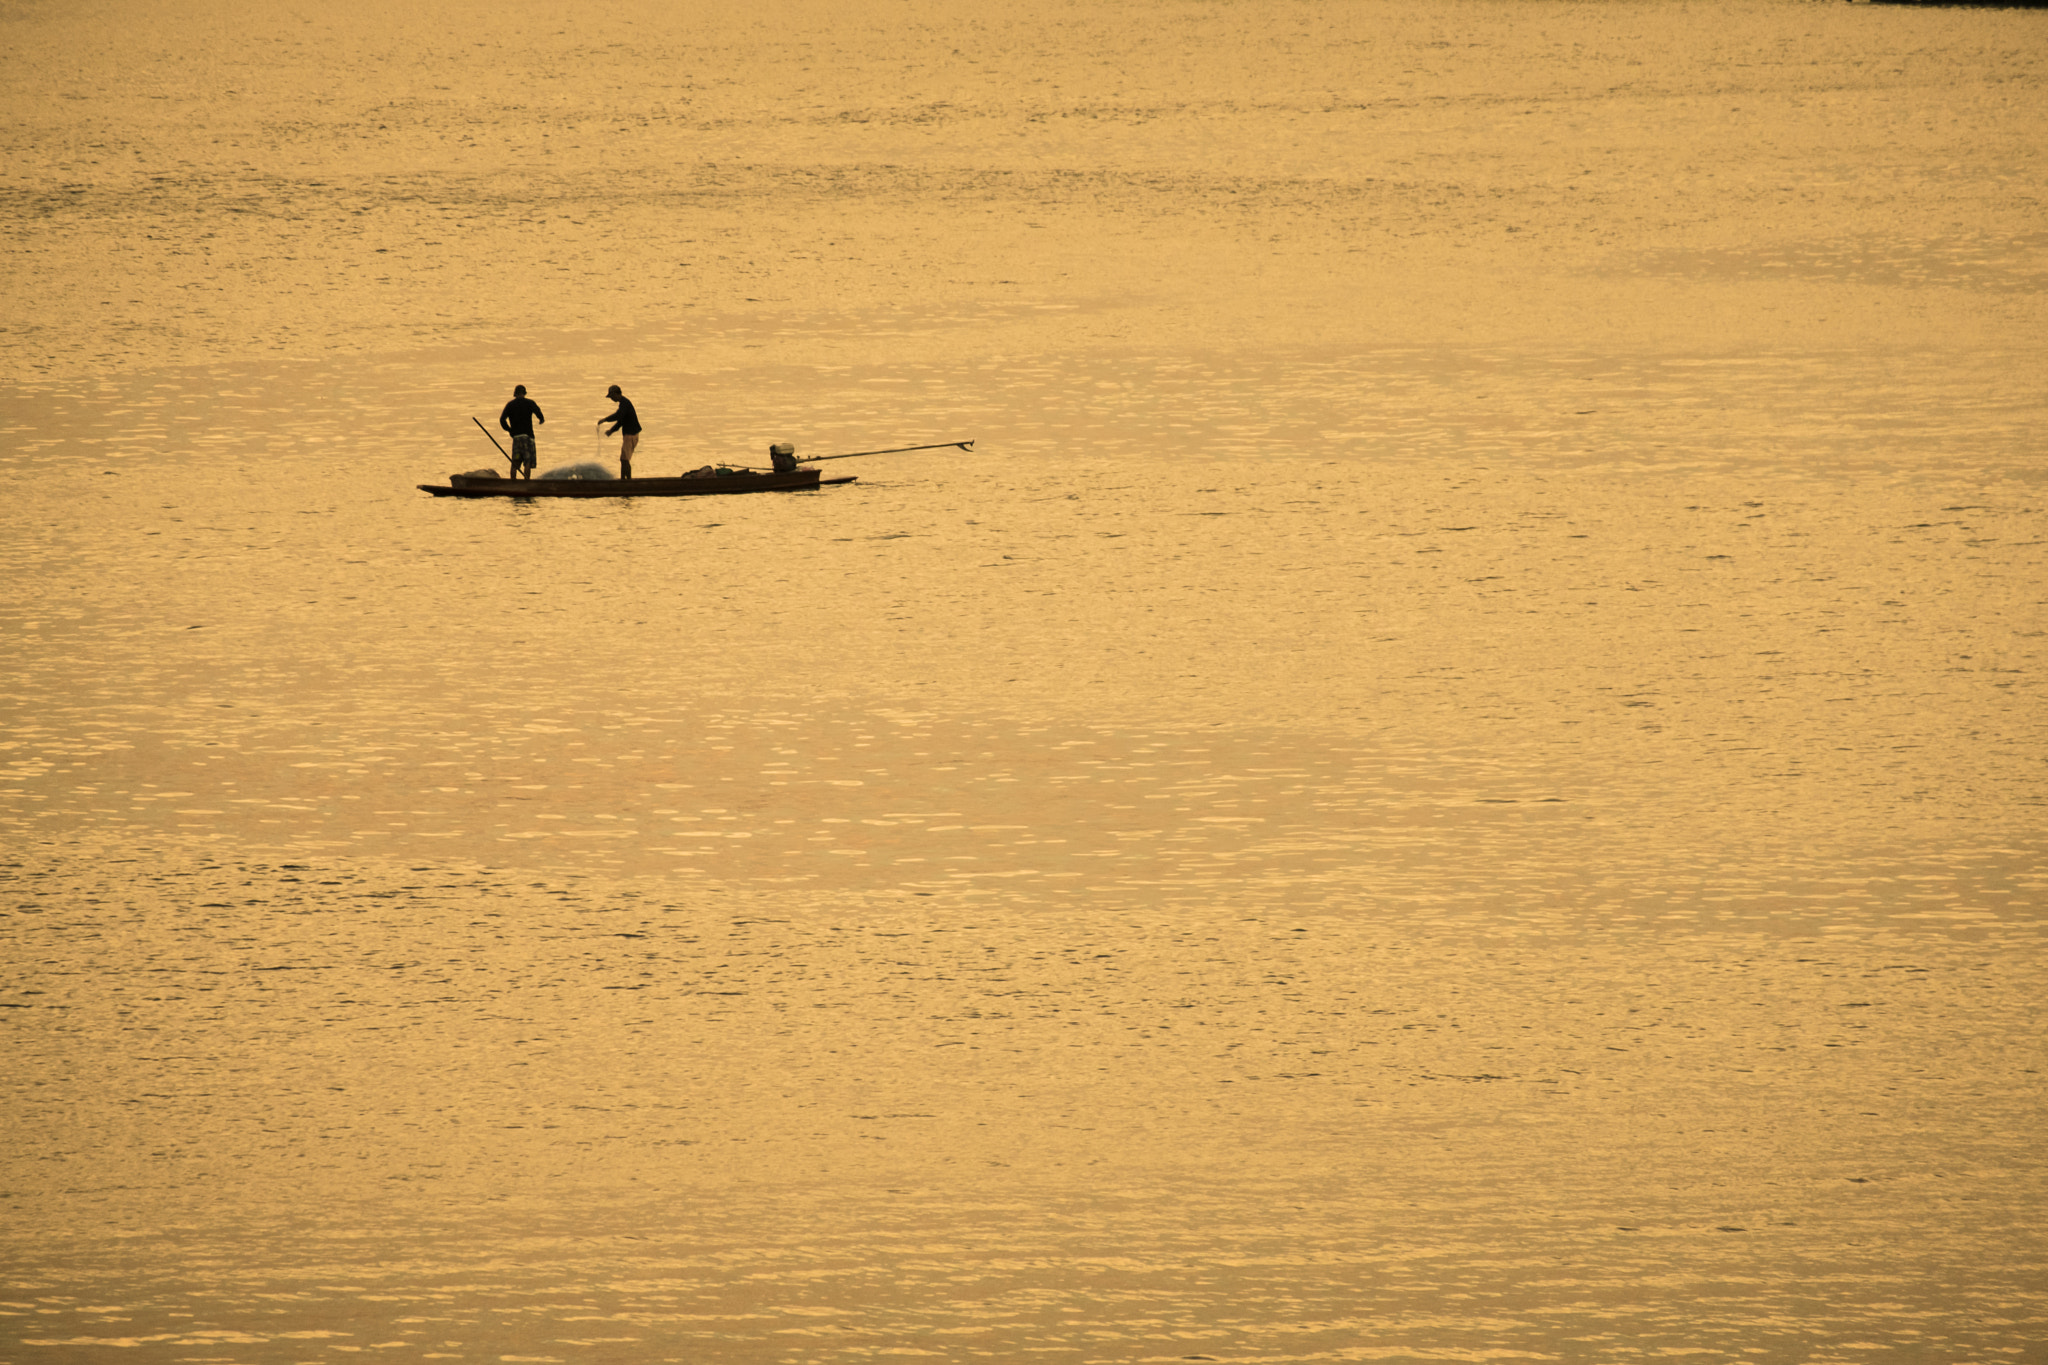 Fujifilm X-T20 + Fujifilm XC 50-230mm F4.5-6.7 OIS II sample photo. Fishermen in boat on morning sunrise photography